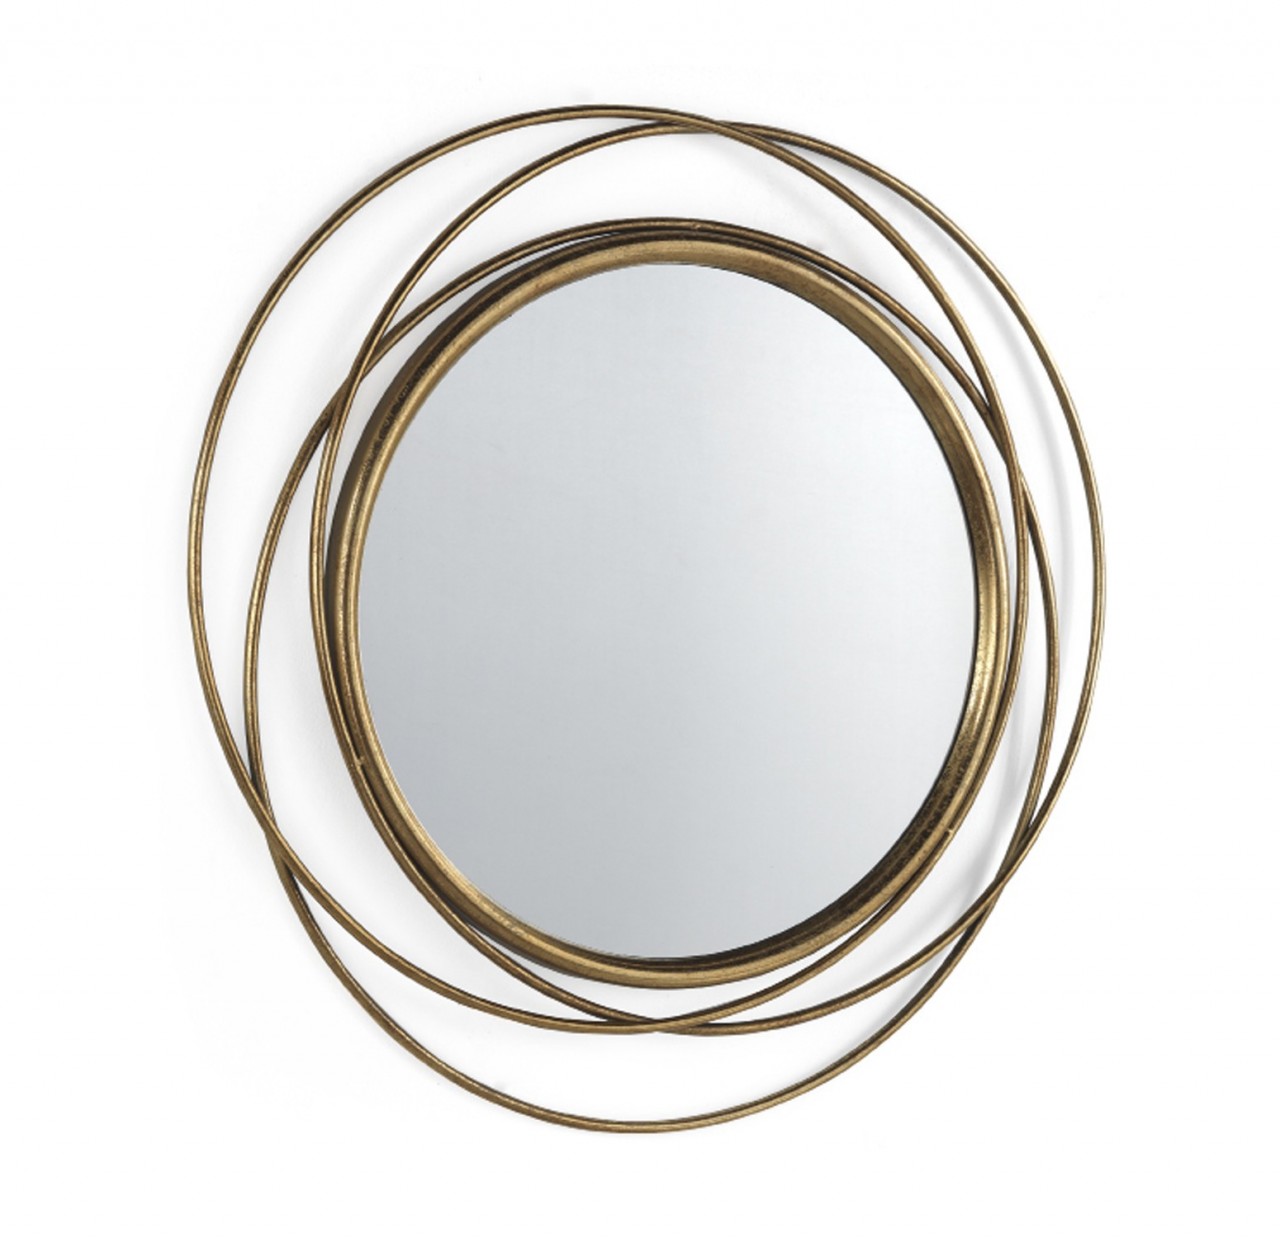 O espelho Summer é o acessório ideal para criar um look moderno e sofisticado. Seja ele qual for, ele é sempre o toque final para completar seu estilo.